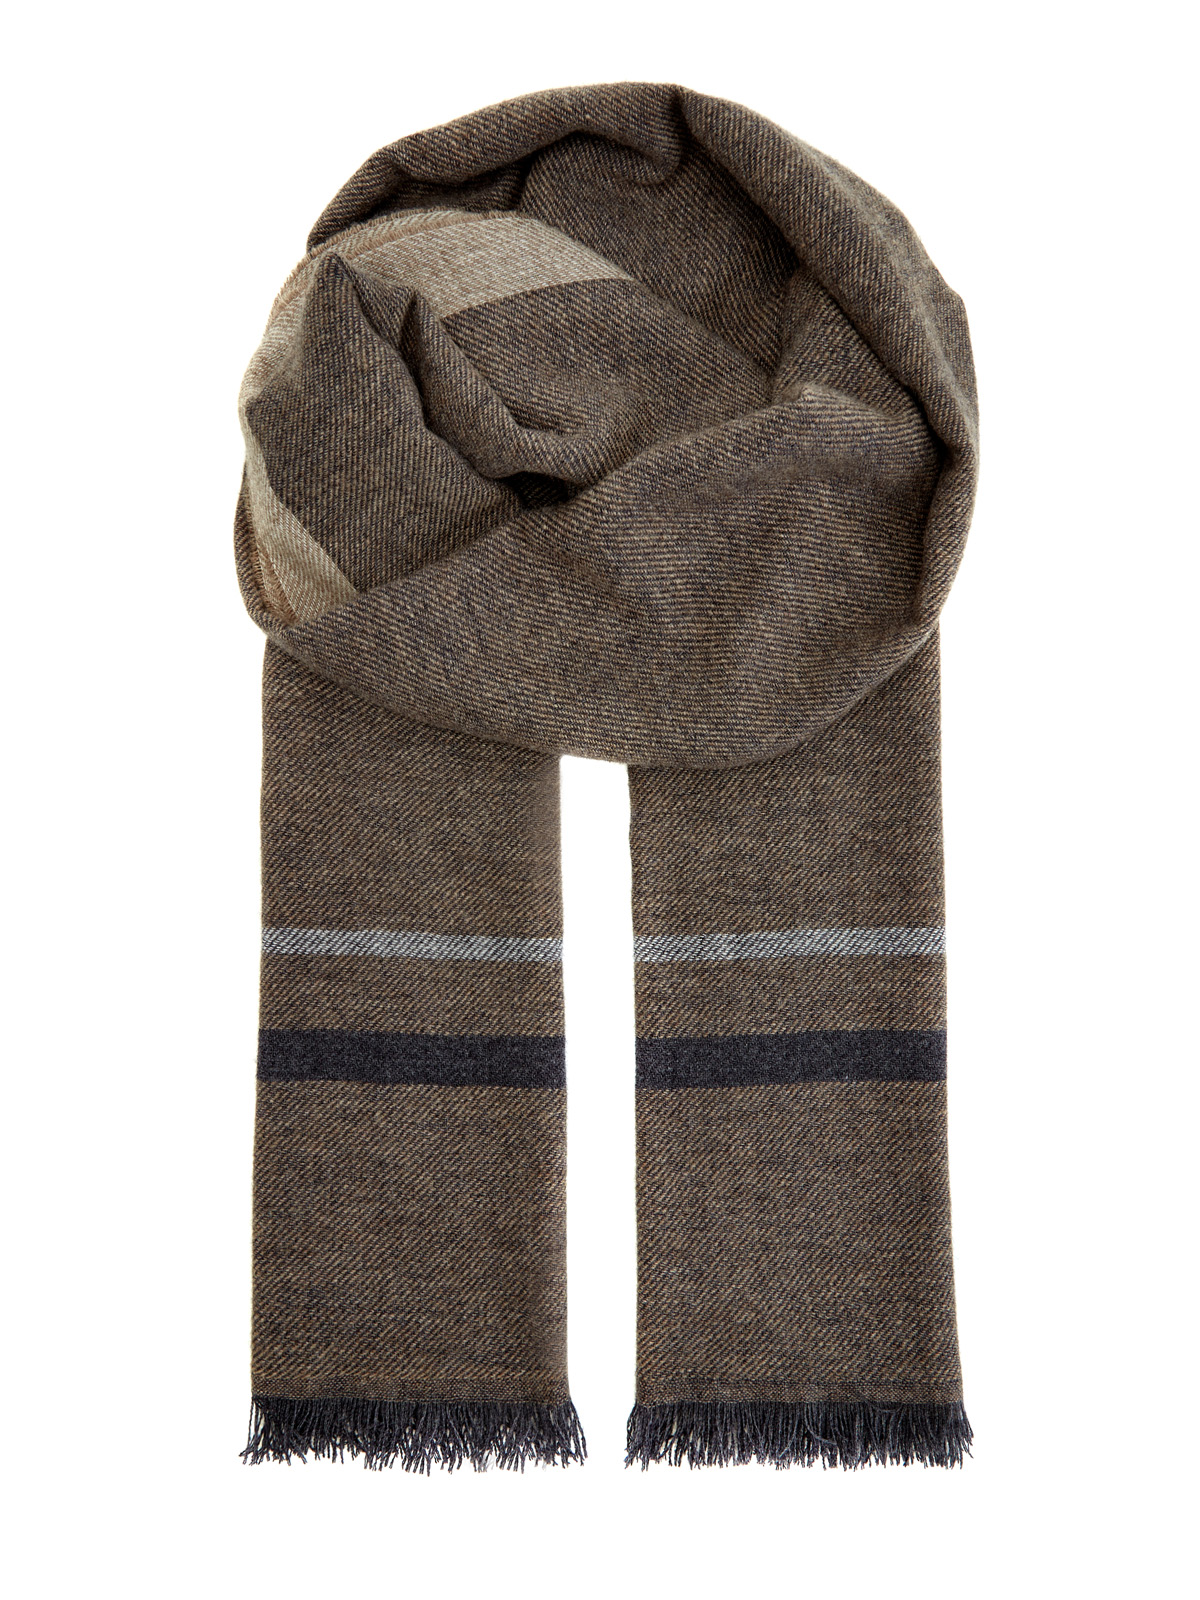 Теплый шерстяной шарф с волокнами шелка и кашемира BERTOLO CASHMERE, цвет коричневый, размер 58 - фото 1